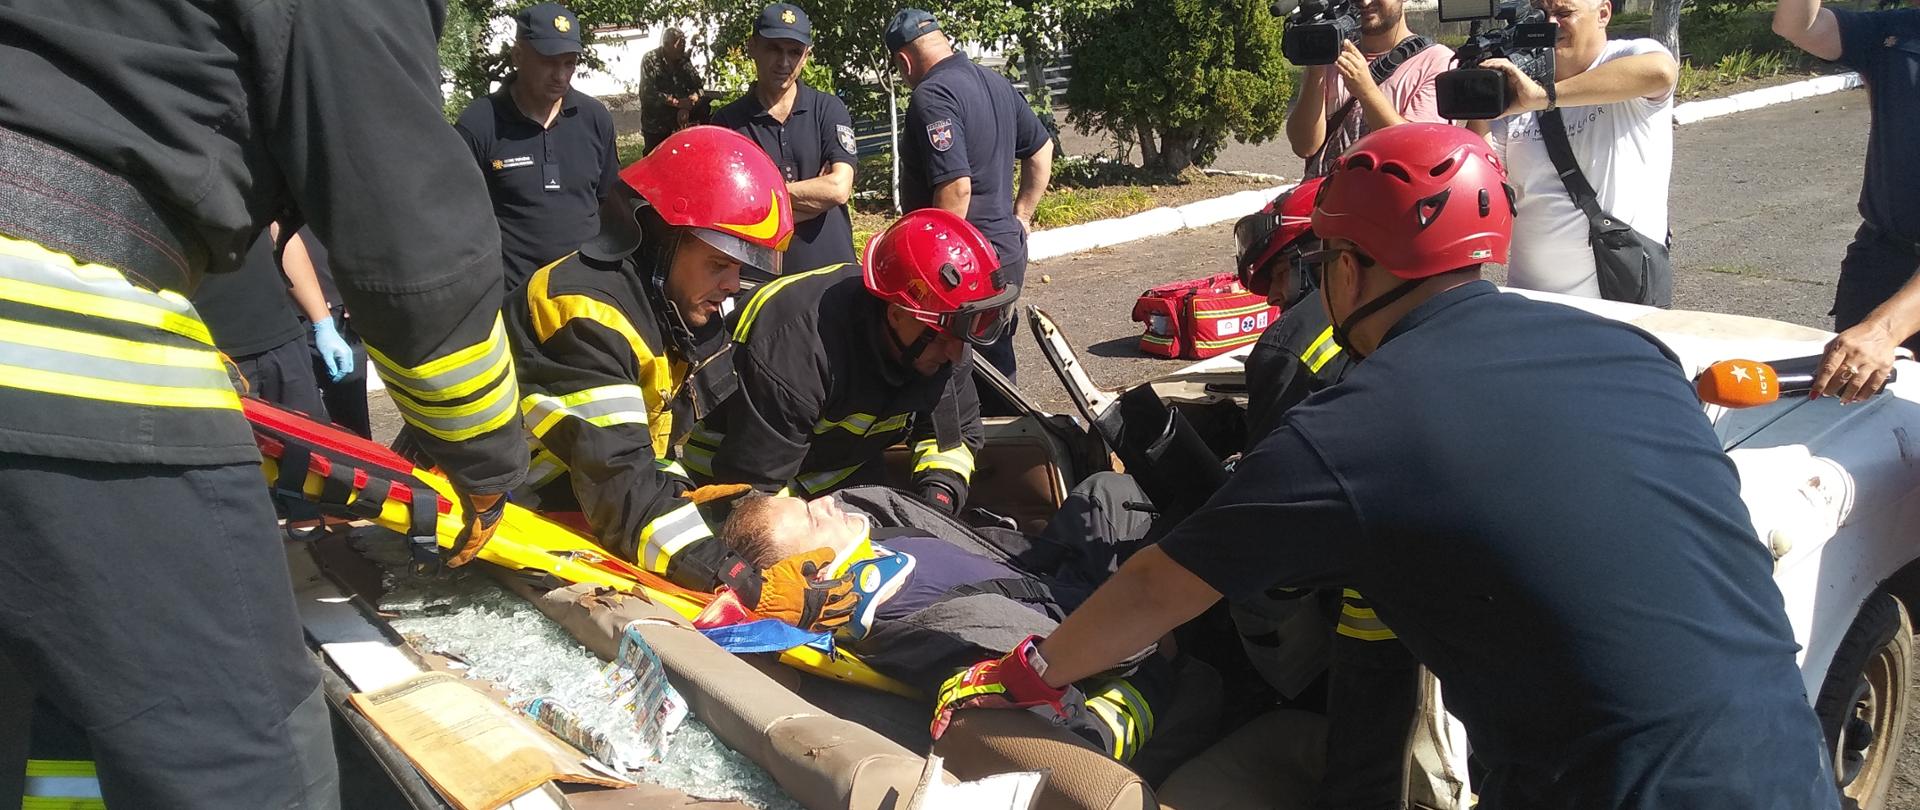 Pokazanie jak ratować życie podczas ćwiczeń strażackich 